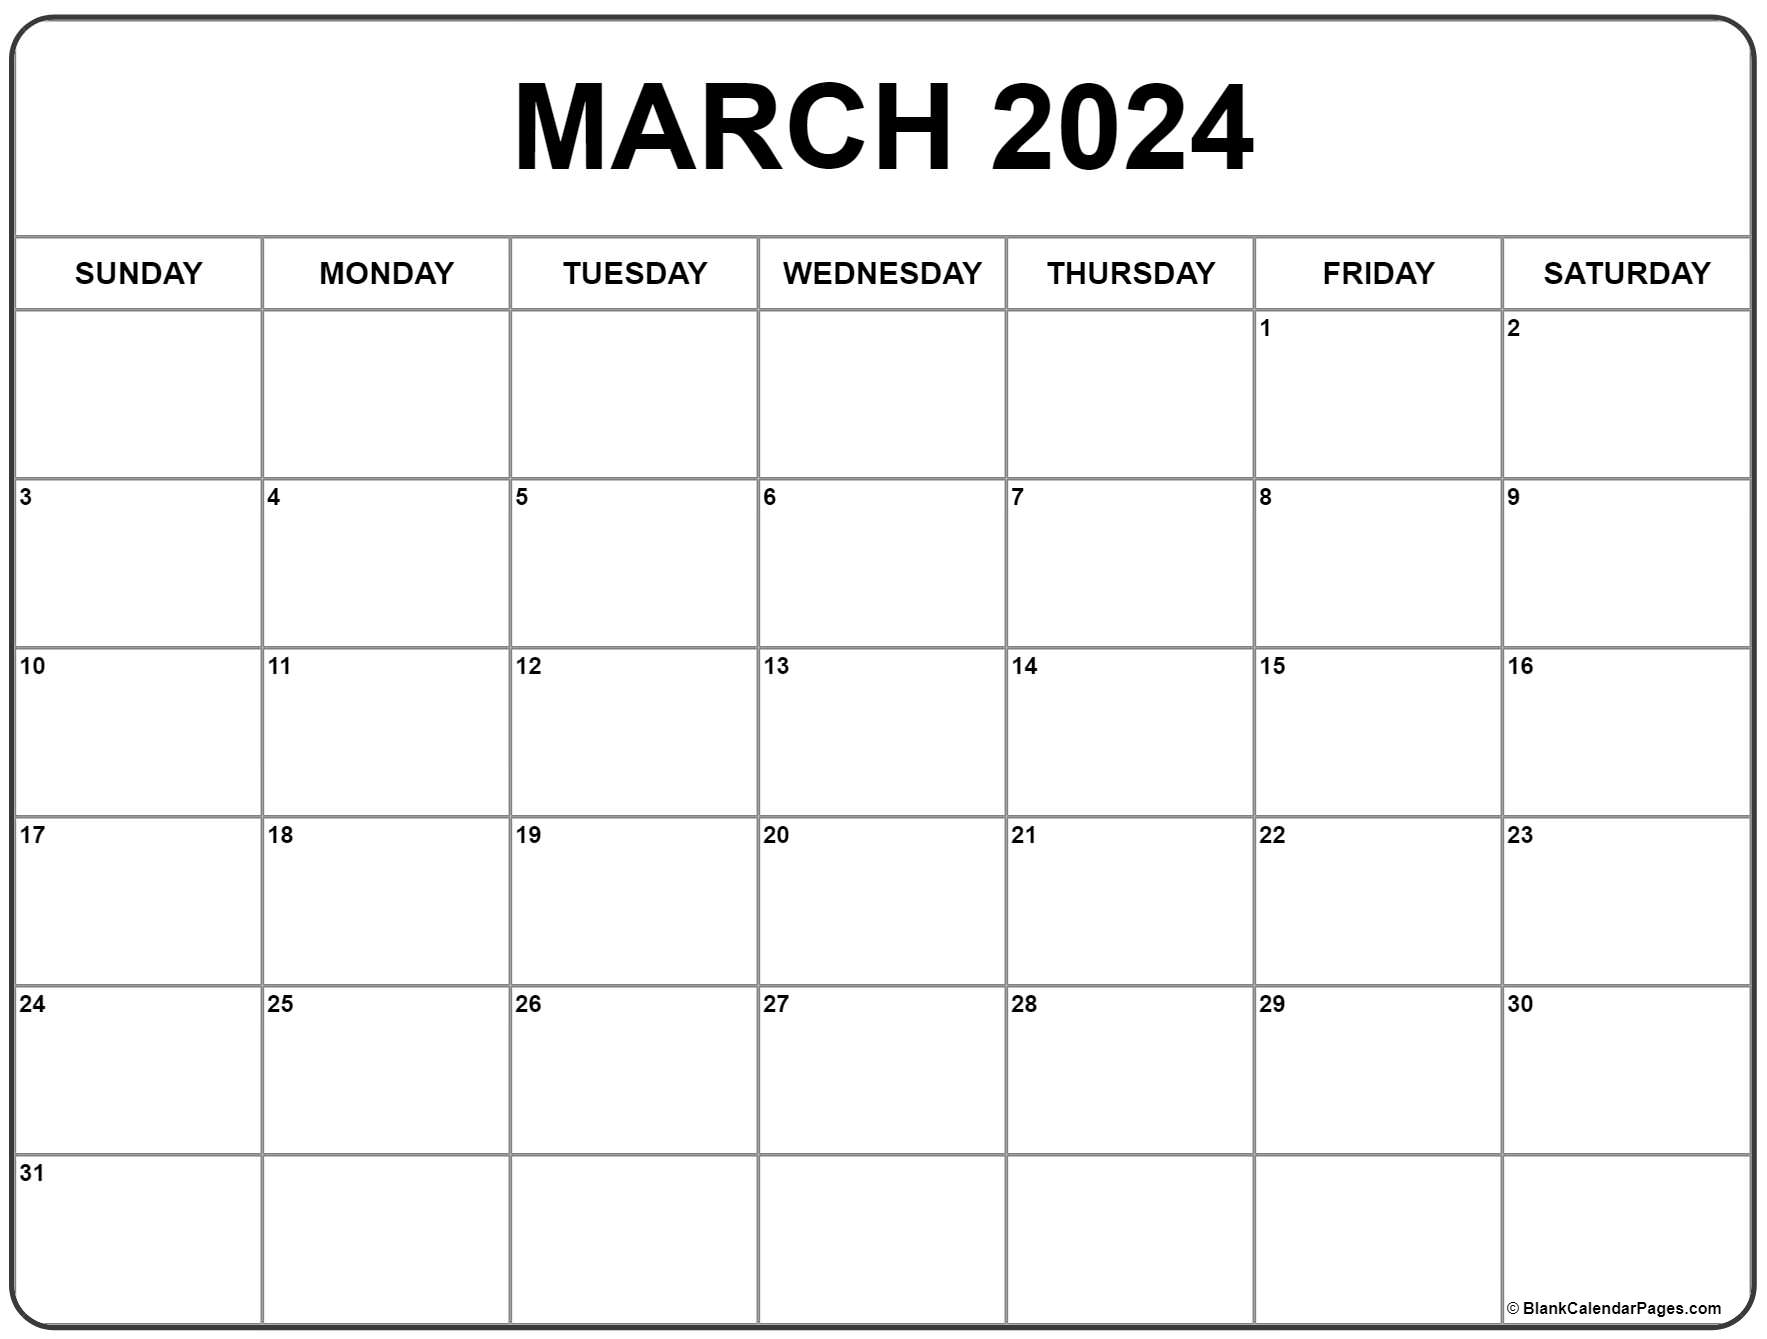 March 2024 Calendar | Free Printable Calendar for 2024 Calendar March Printable